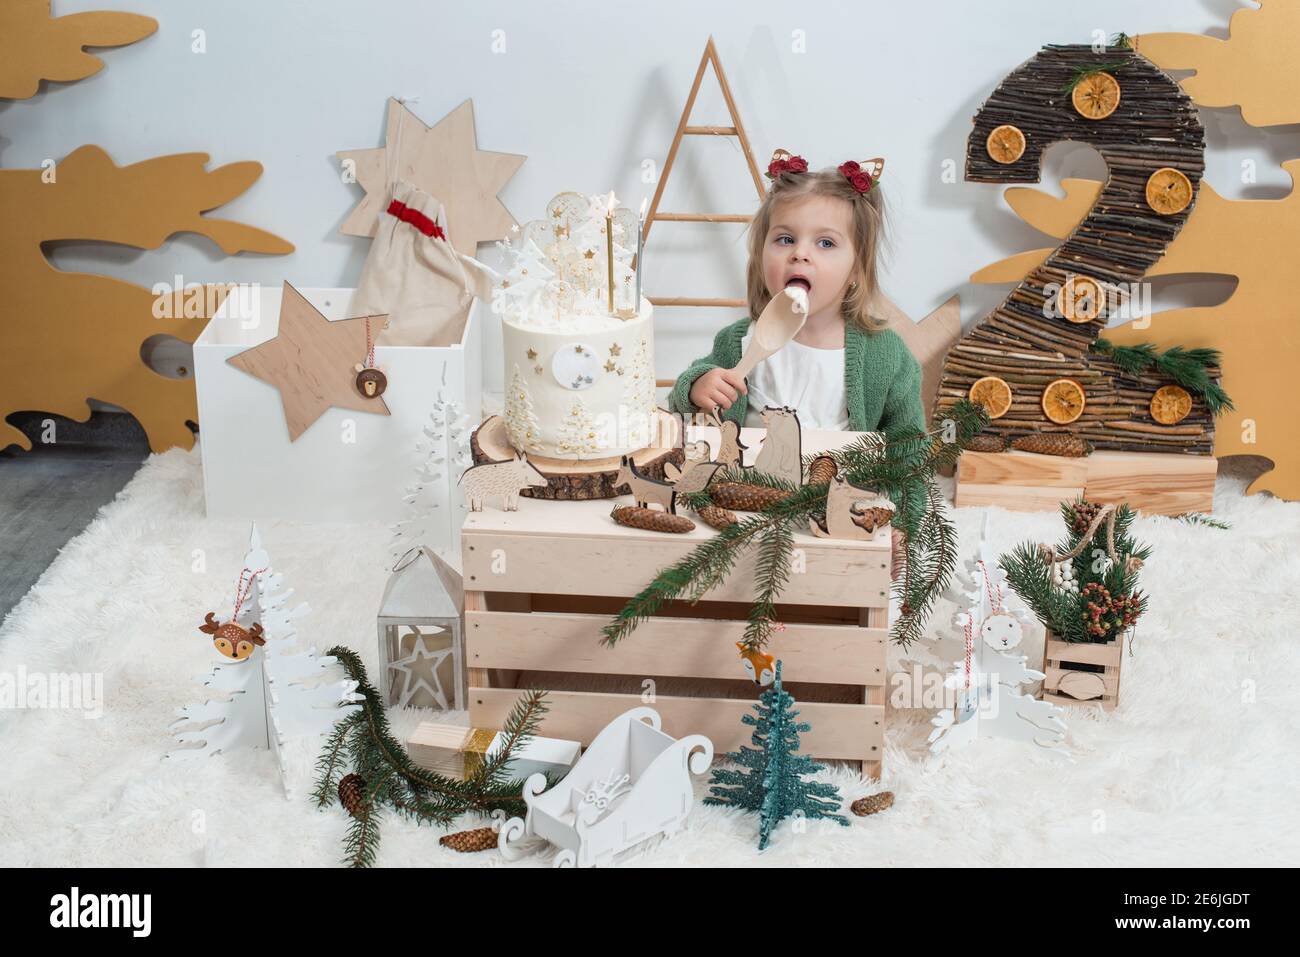 https://c8.alamy.com/compit/2e6jgdt/decorazioni-per-compleanno-invernali-per-bambini-2-anni-carino-bambina-in-un-cardigan-verde-vicino-torta-di-compleanno-bianca-2e6jgdt.jpg